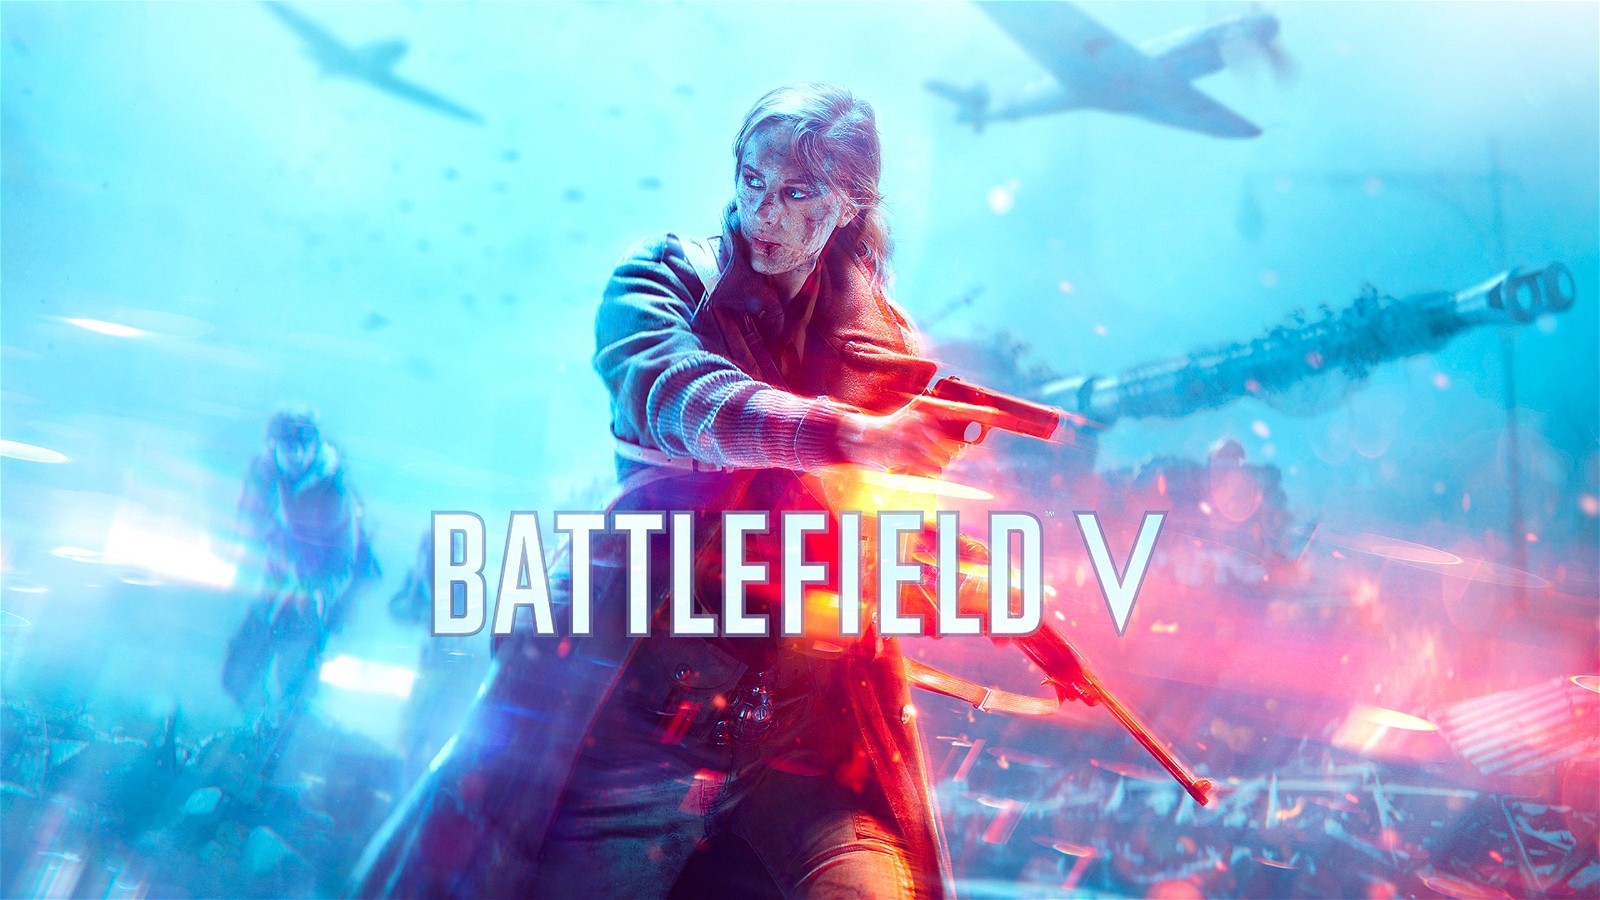 Battlefield 5 cover art